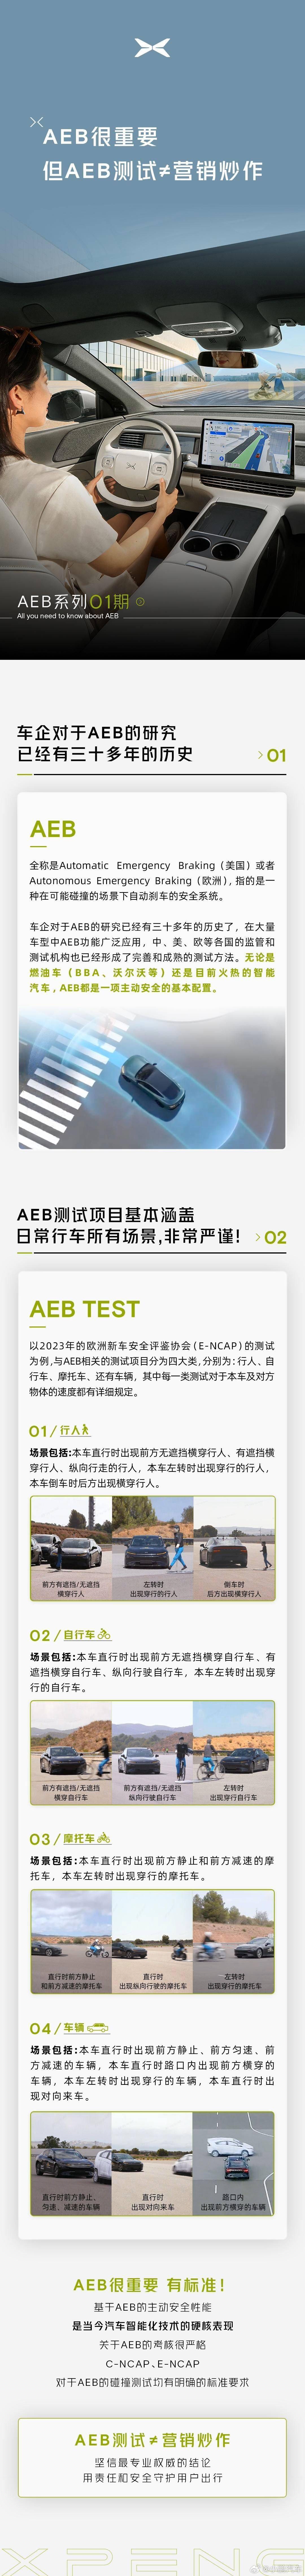 小鹏汽车回应余承东朋友圈言论：AEB测试不等于营销炒作